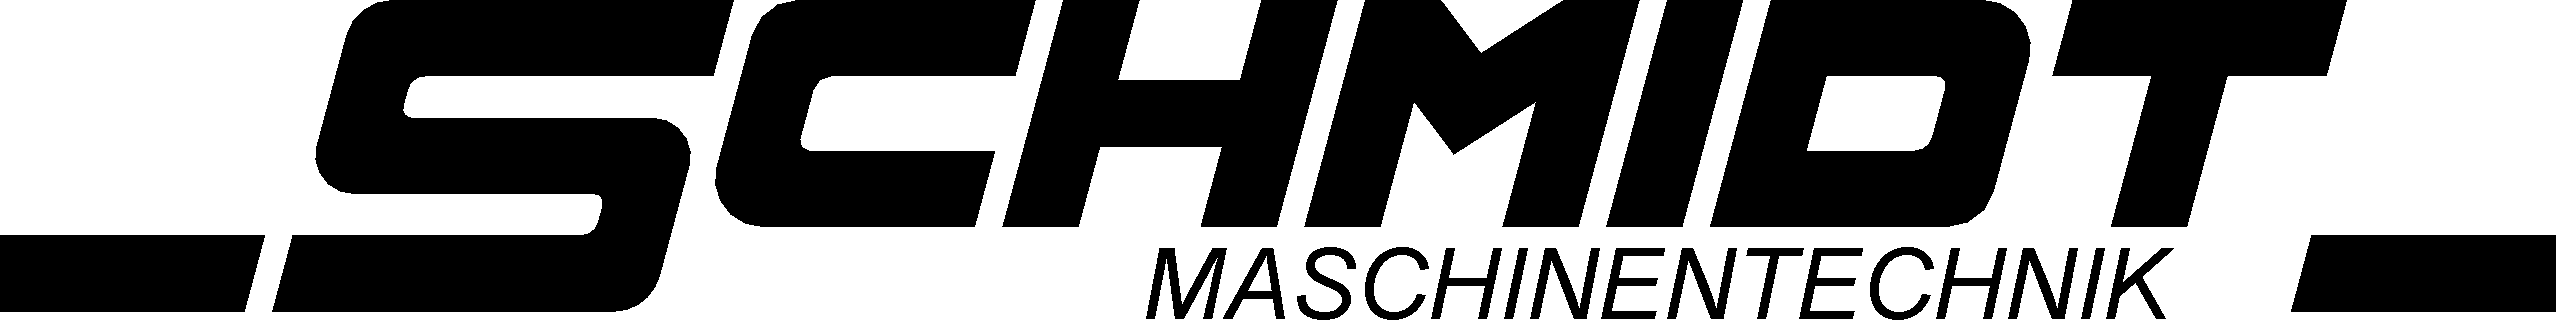 Schmidt Maschinentechnik-Logo